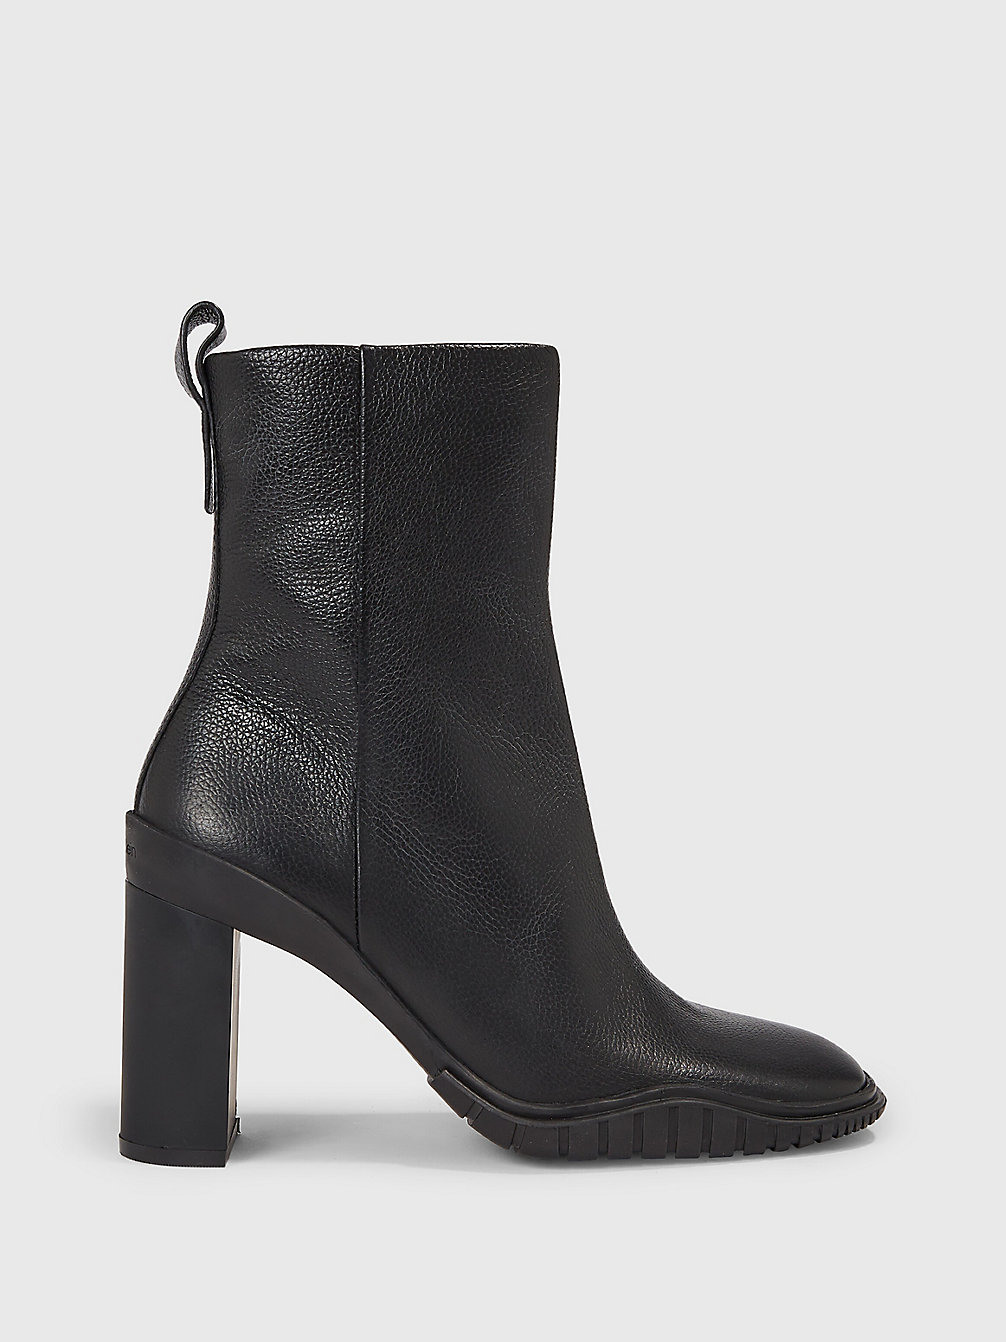 CK BLACK Ankle-Boots Mit Absatz Aus Leder undefined Damen Calvin Klein